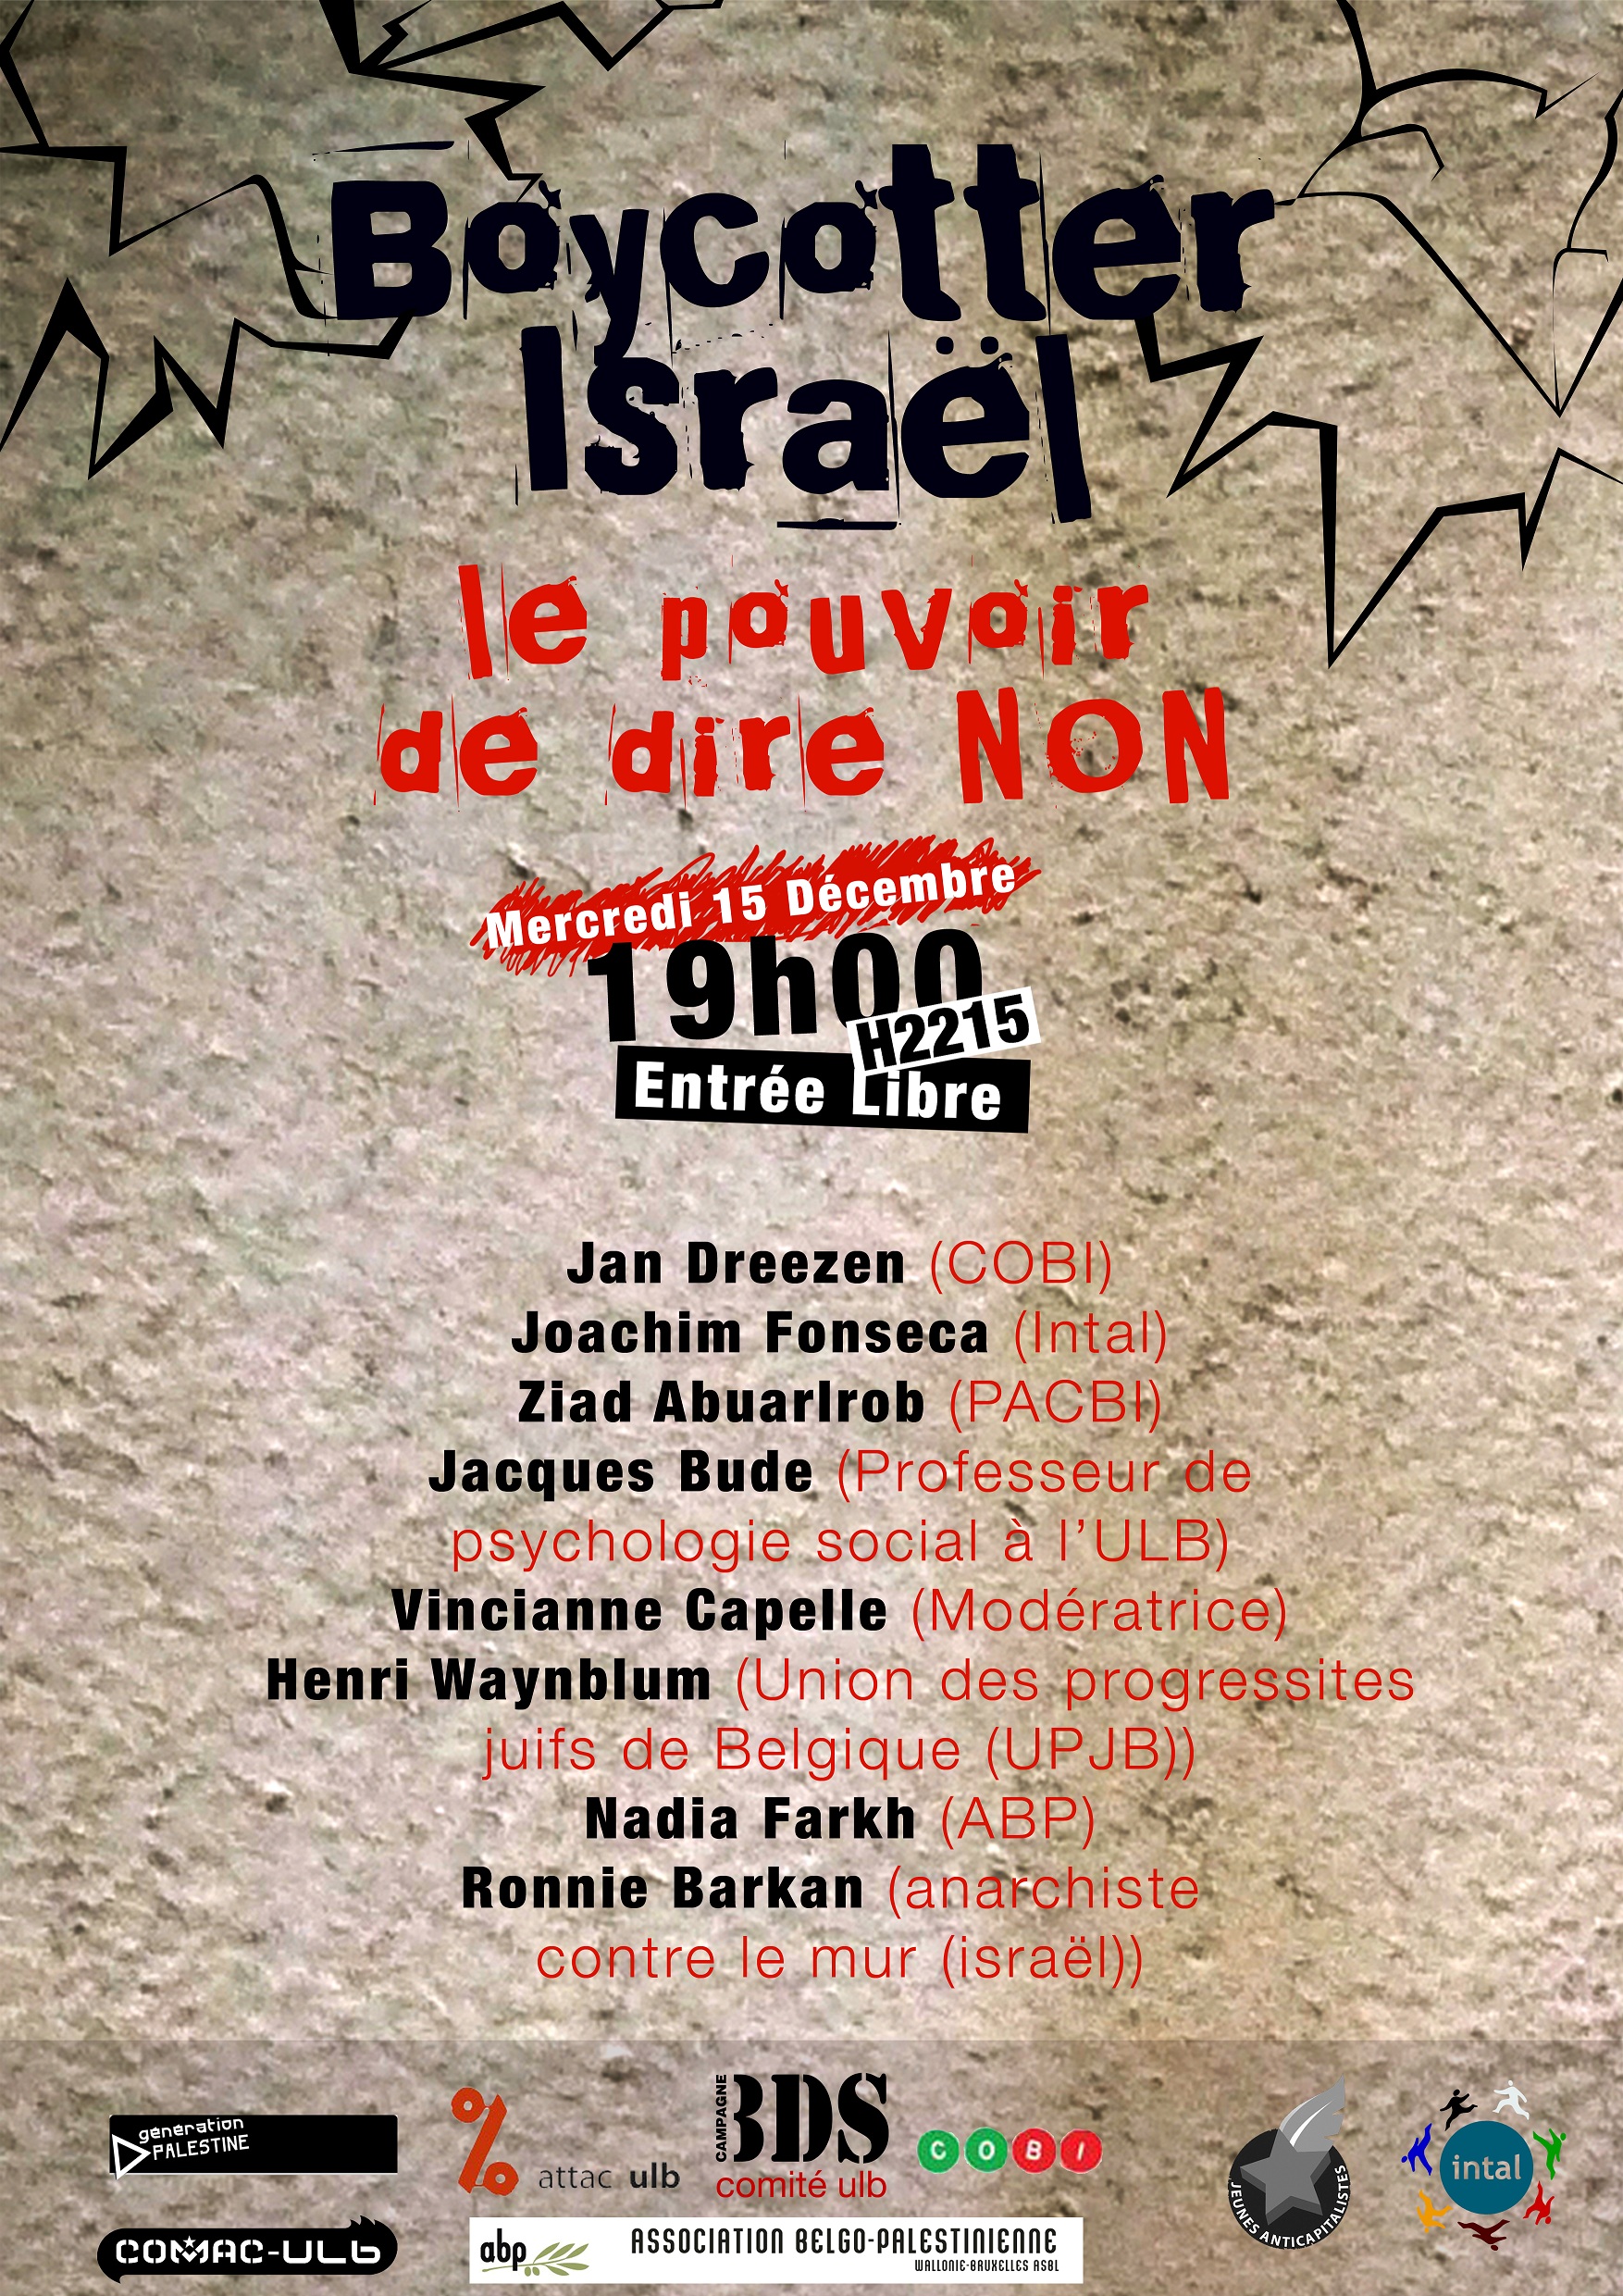 Boycotter_Israel_-_Le_pouvoir_de_dire_non.jpg